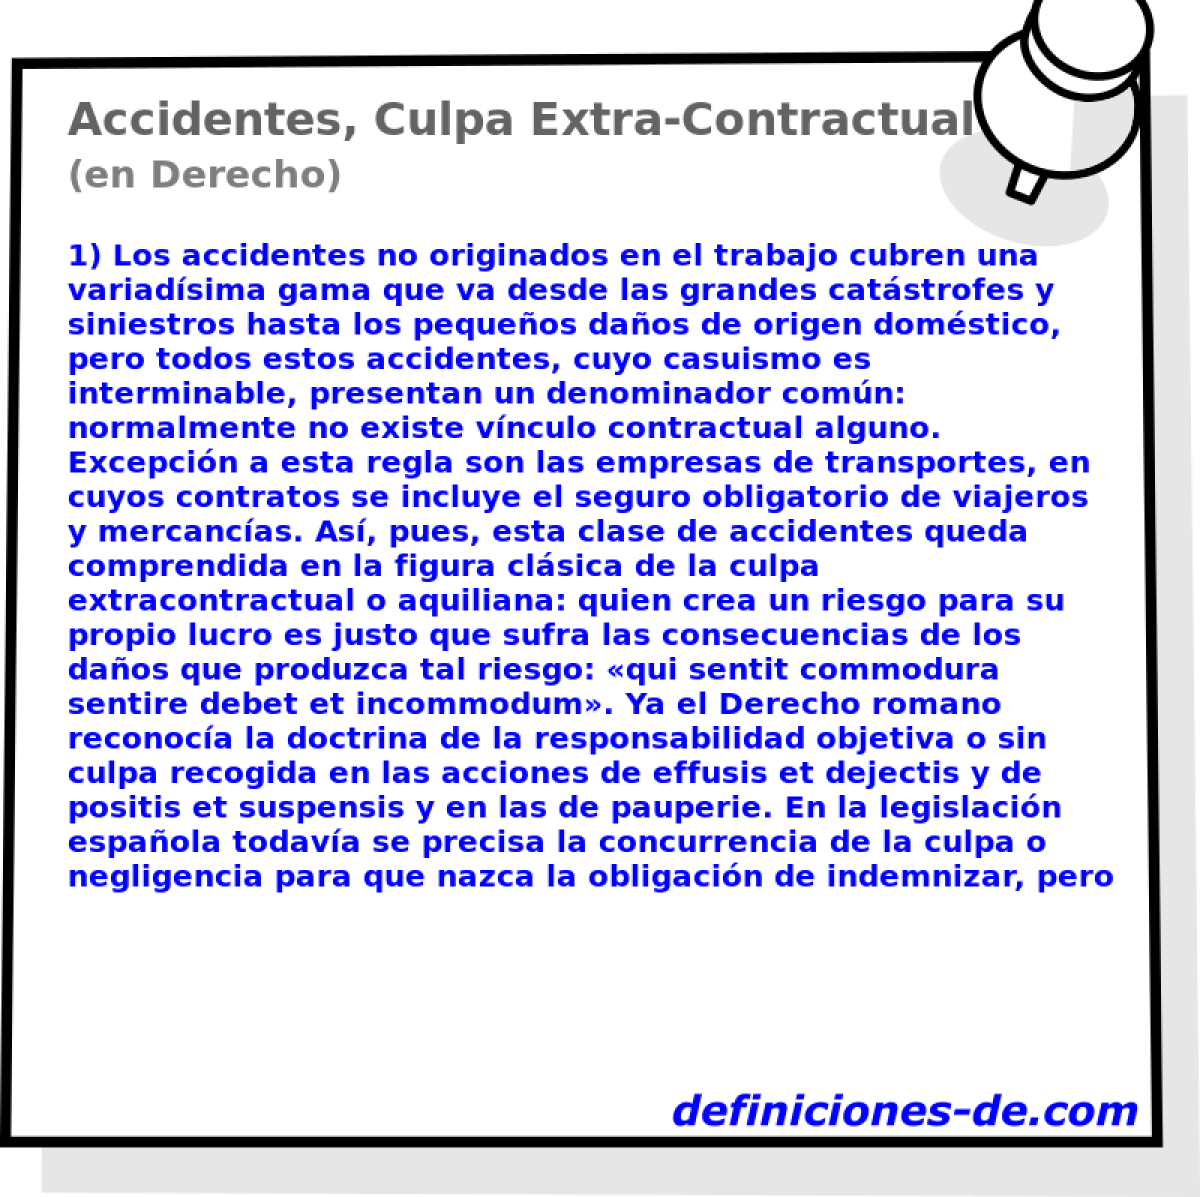 Accidentes, Culpa Extra-Contractual (en Derecho)